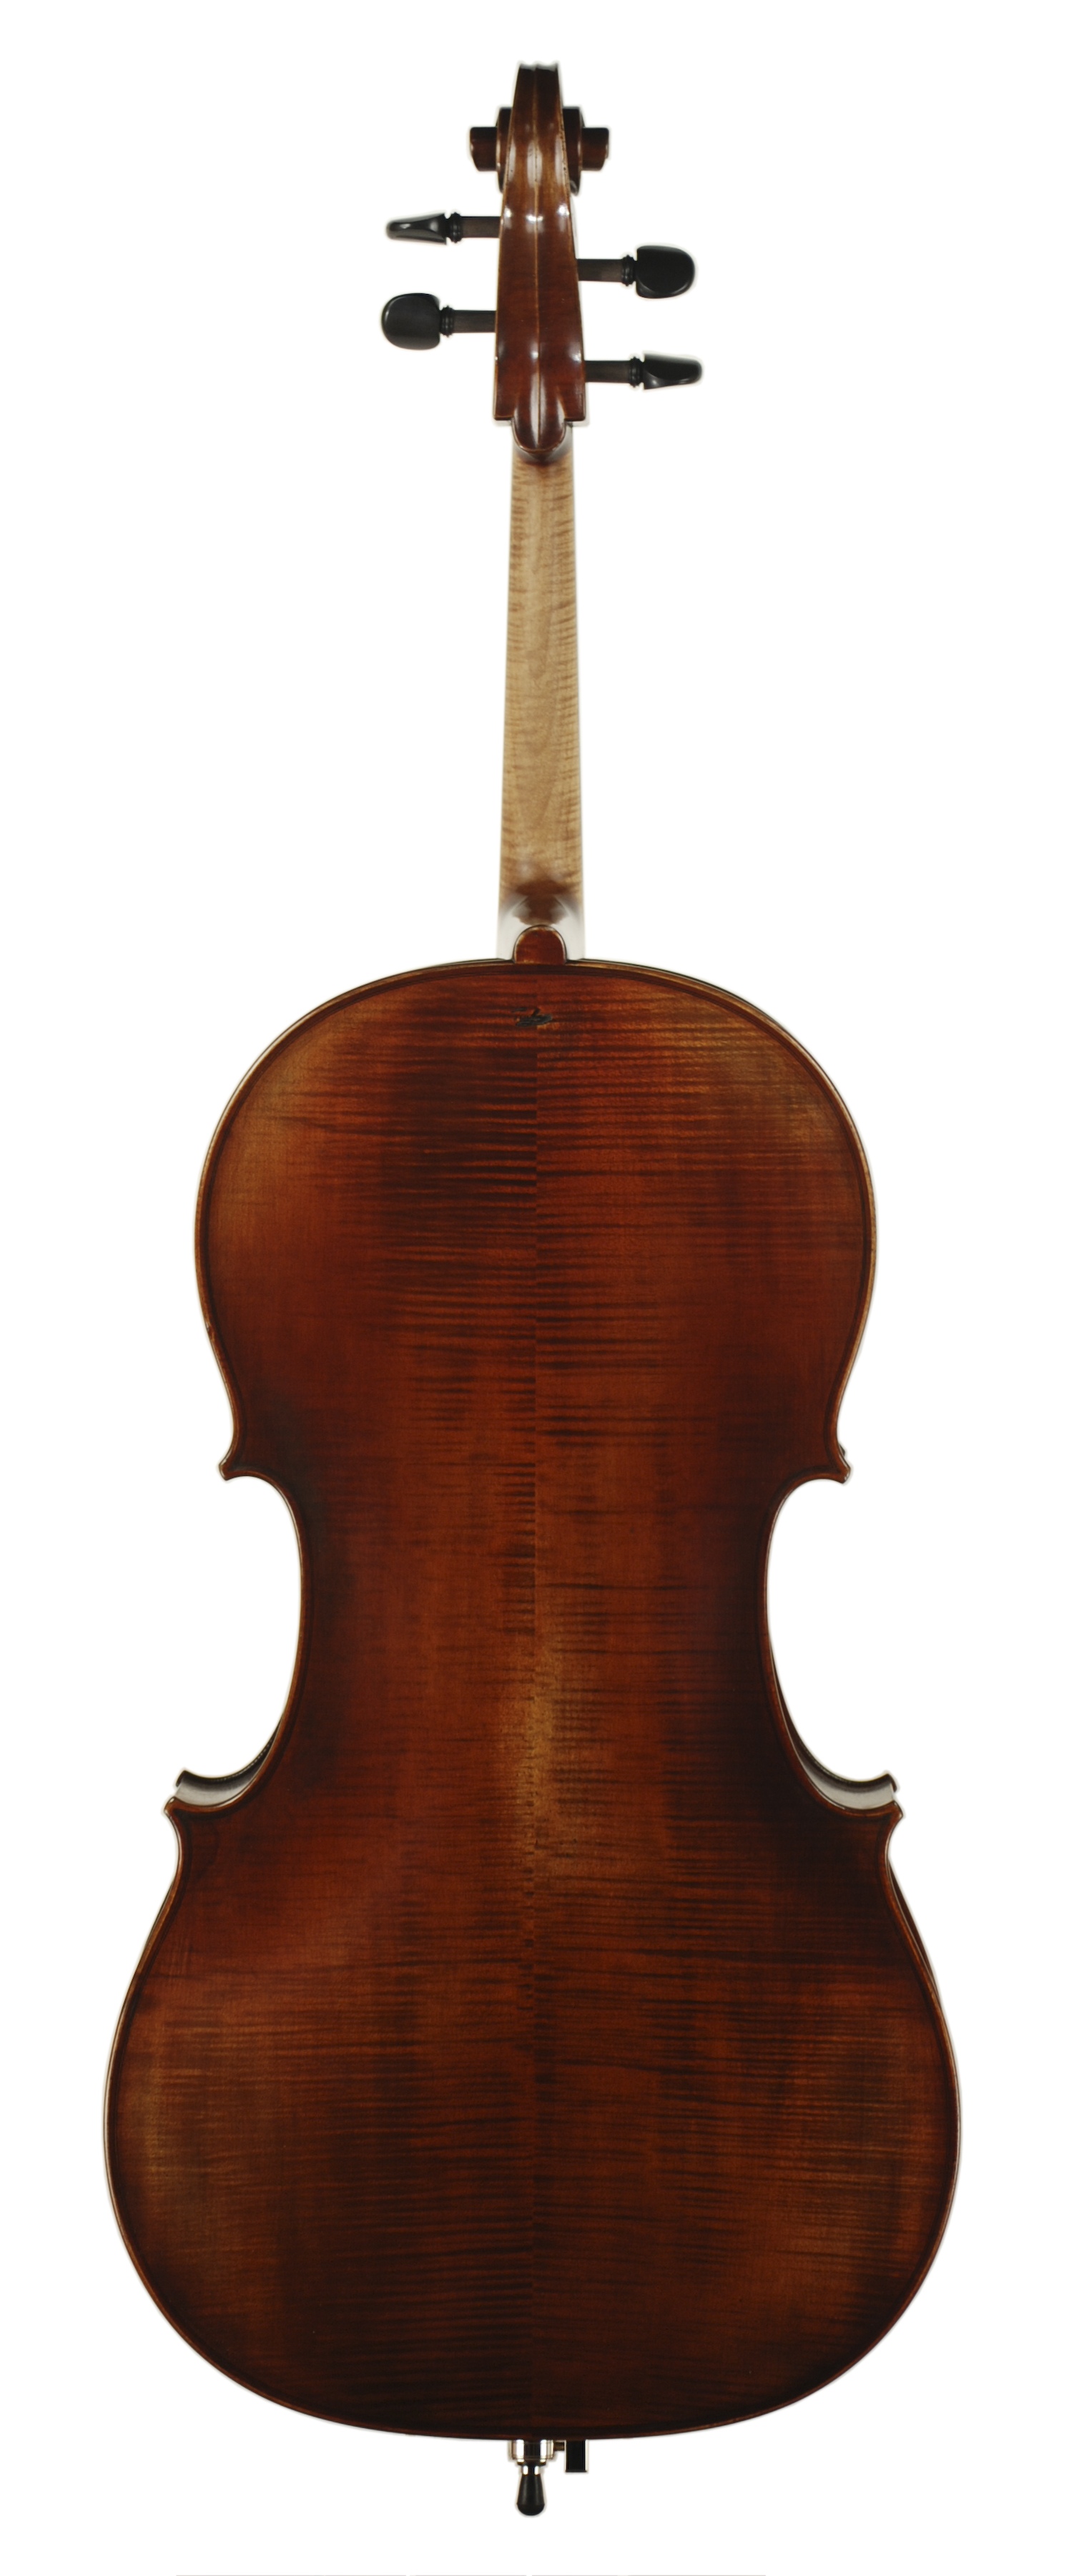 Bærbar Jakke Ligegyldighed Marko Ackert Antiqued Red/Brown/Amber Varnish Cello | J.R. Judd Violins